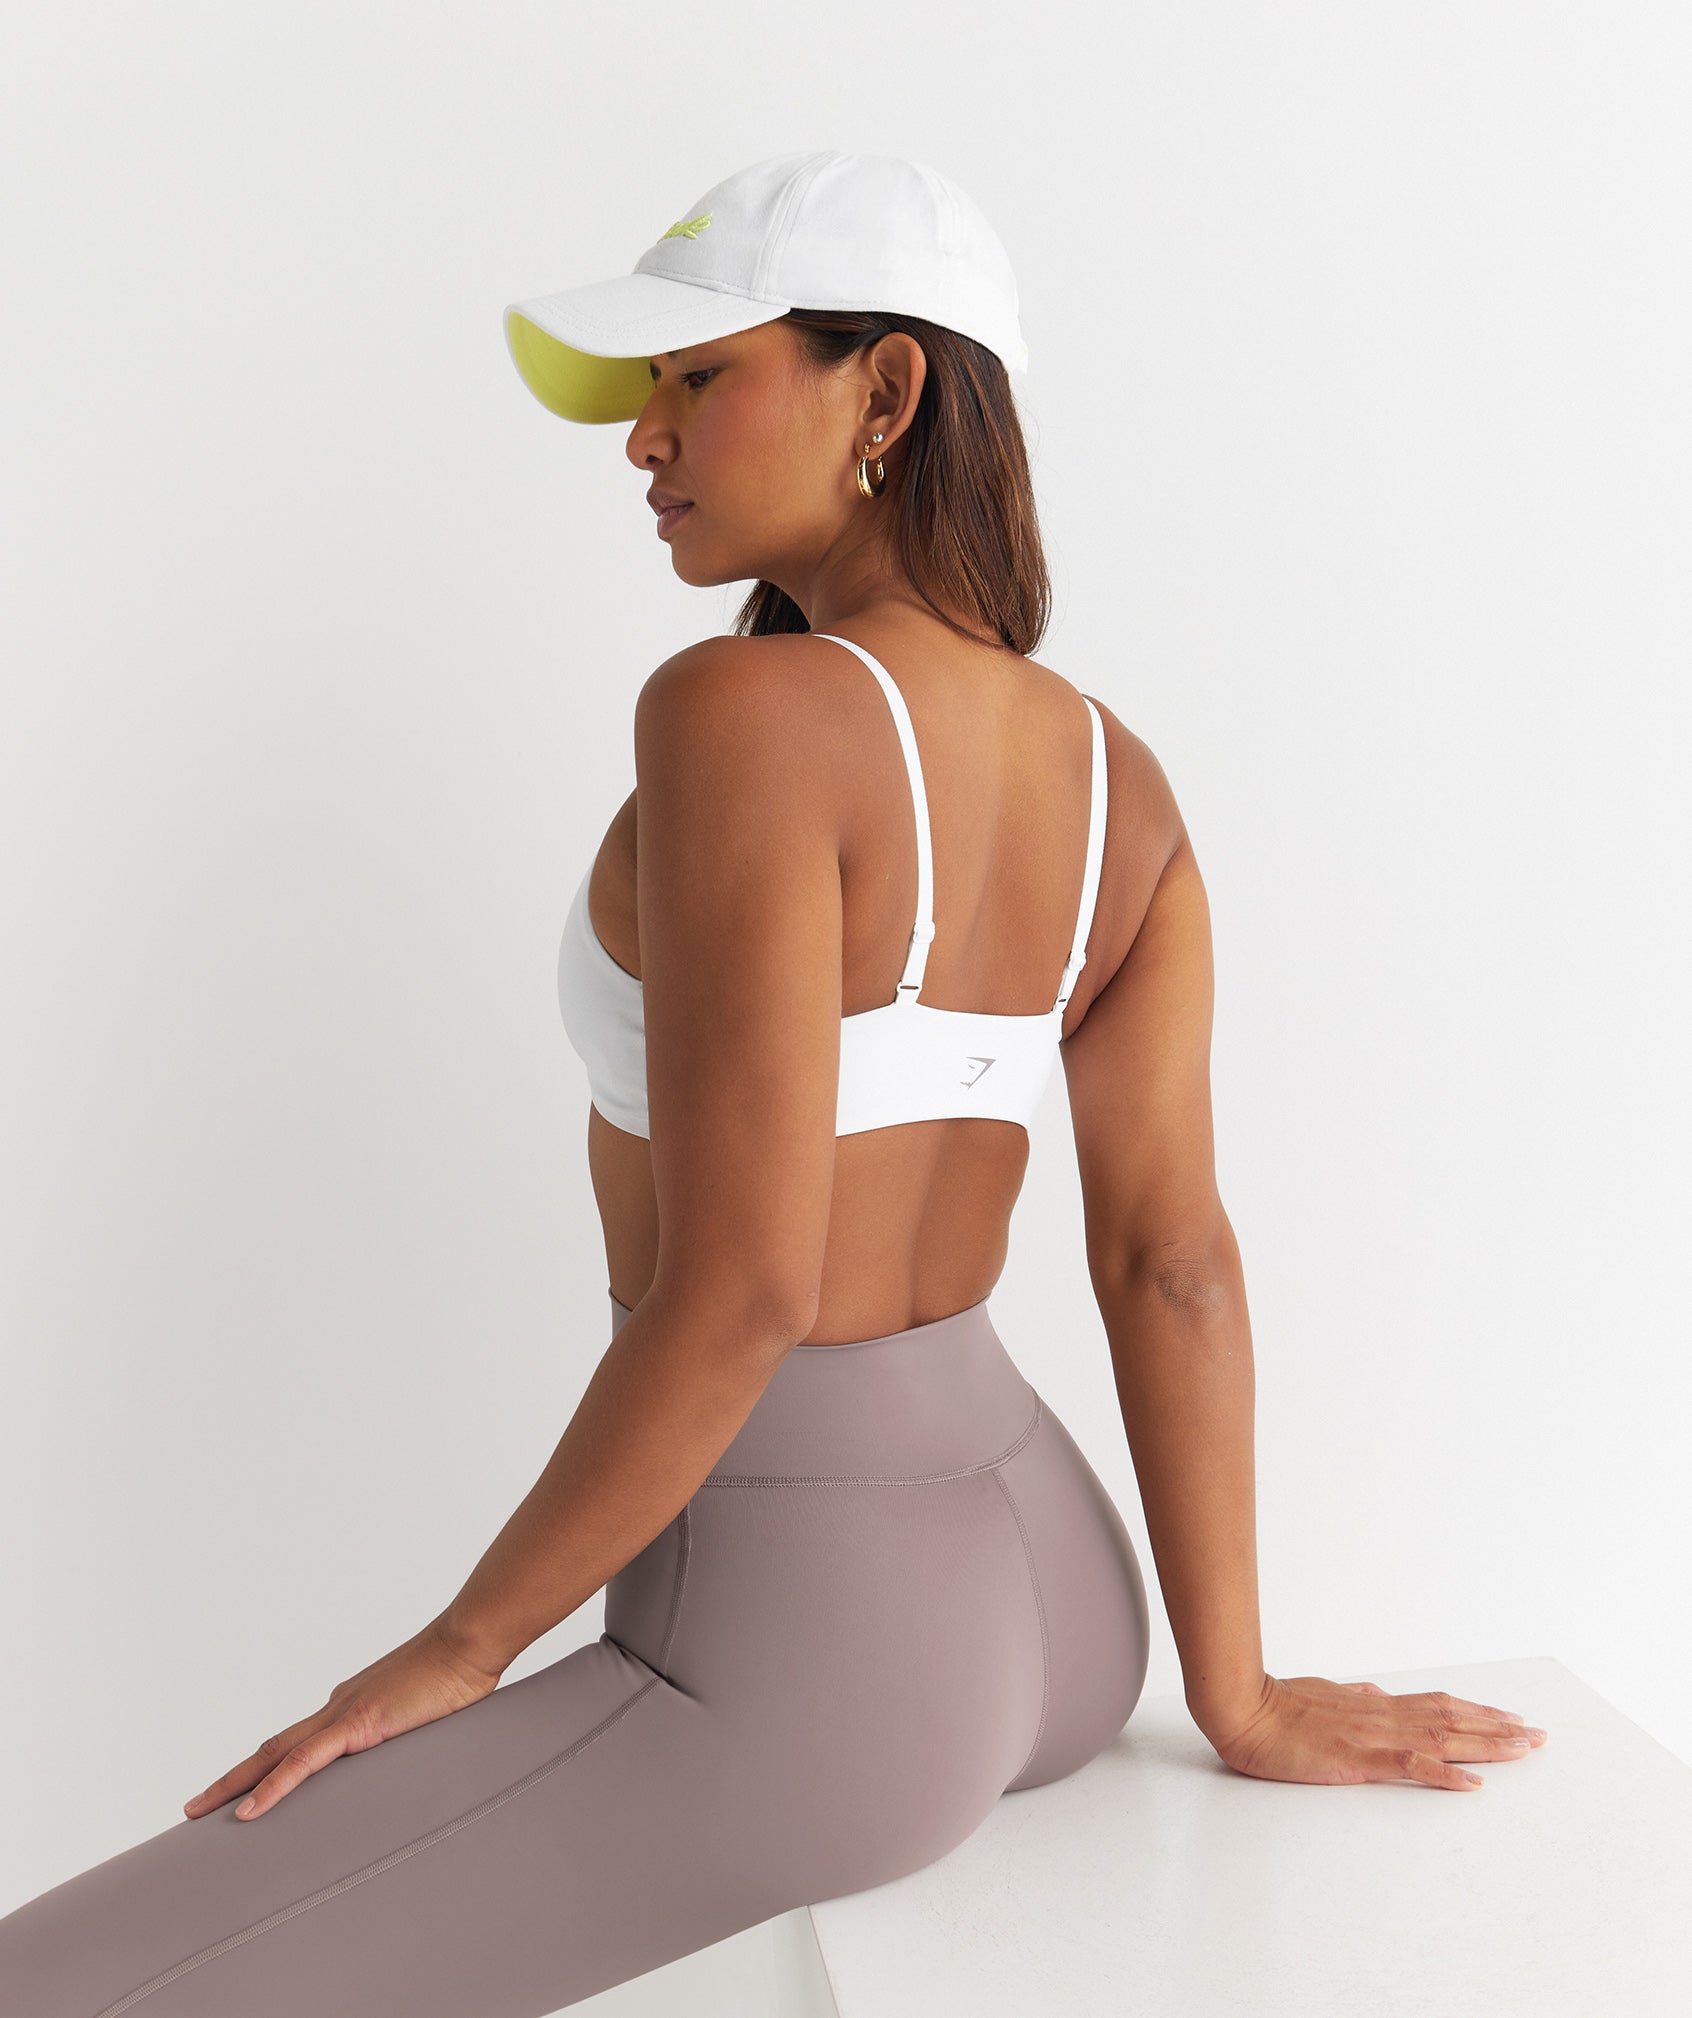 Shop Women's Gym Clothes & Workout Clothes - Gymshark